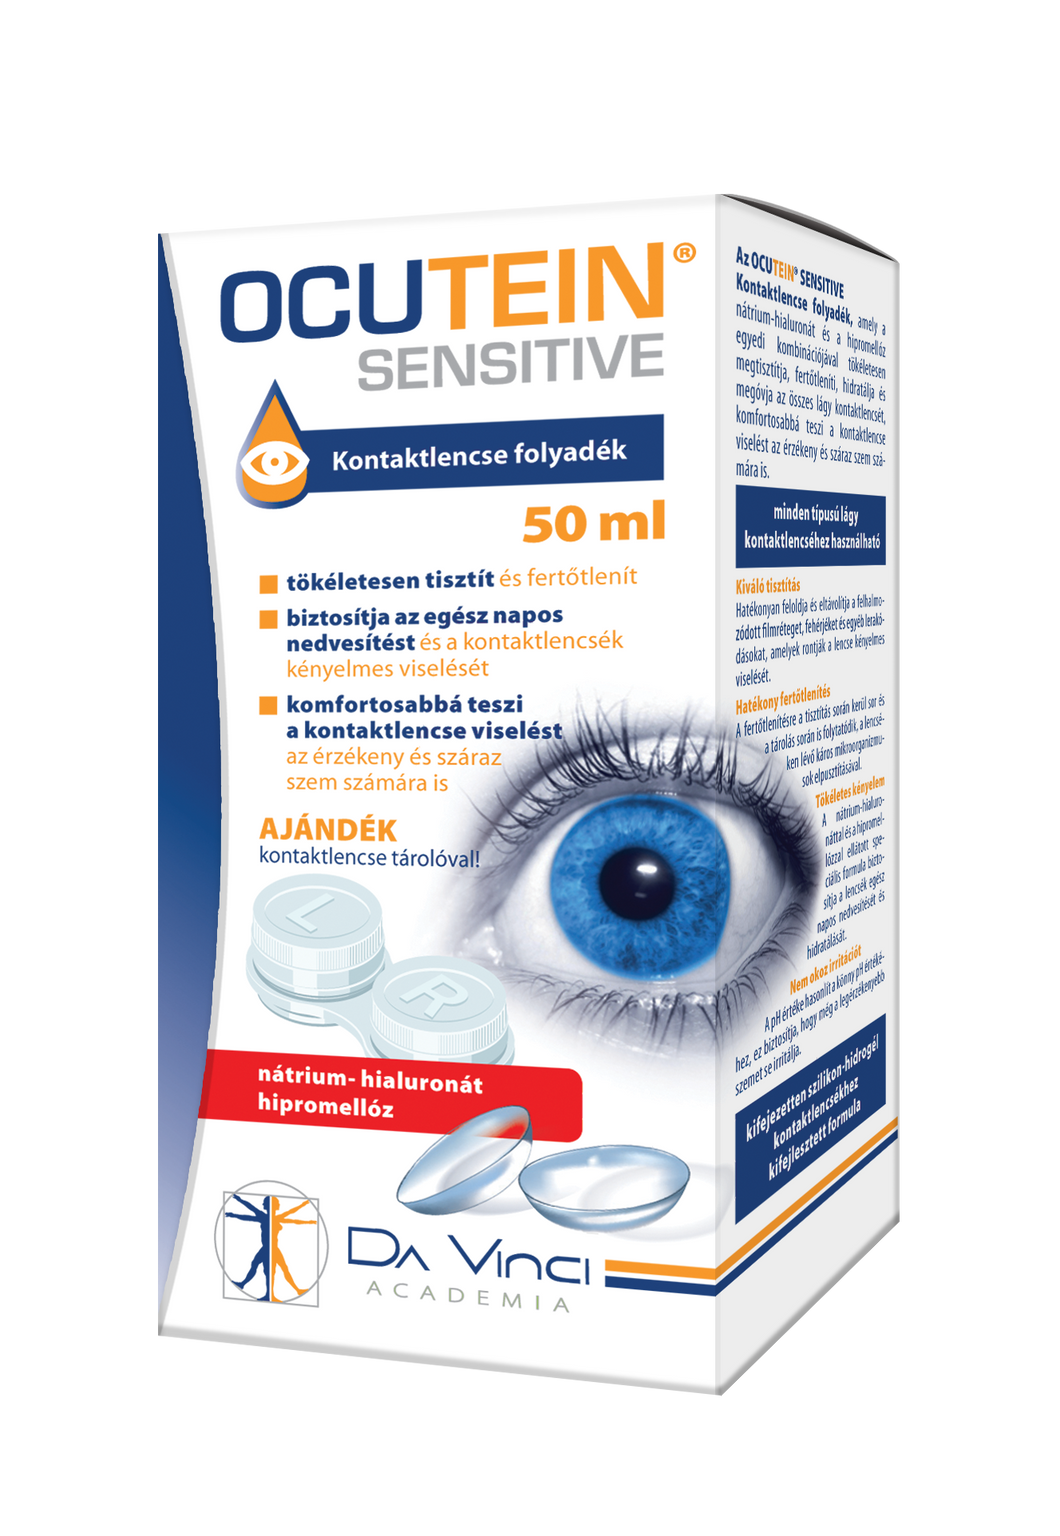 Ocutein sensitive kontaktlencse folyadék 50 ml